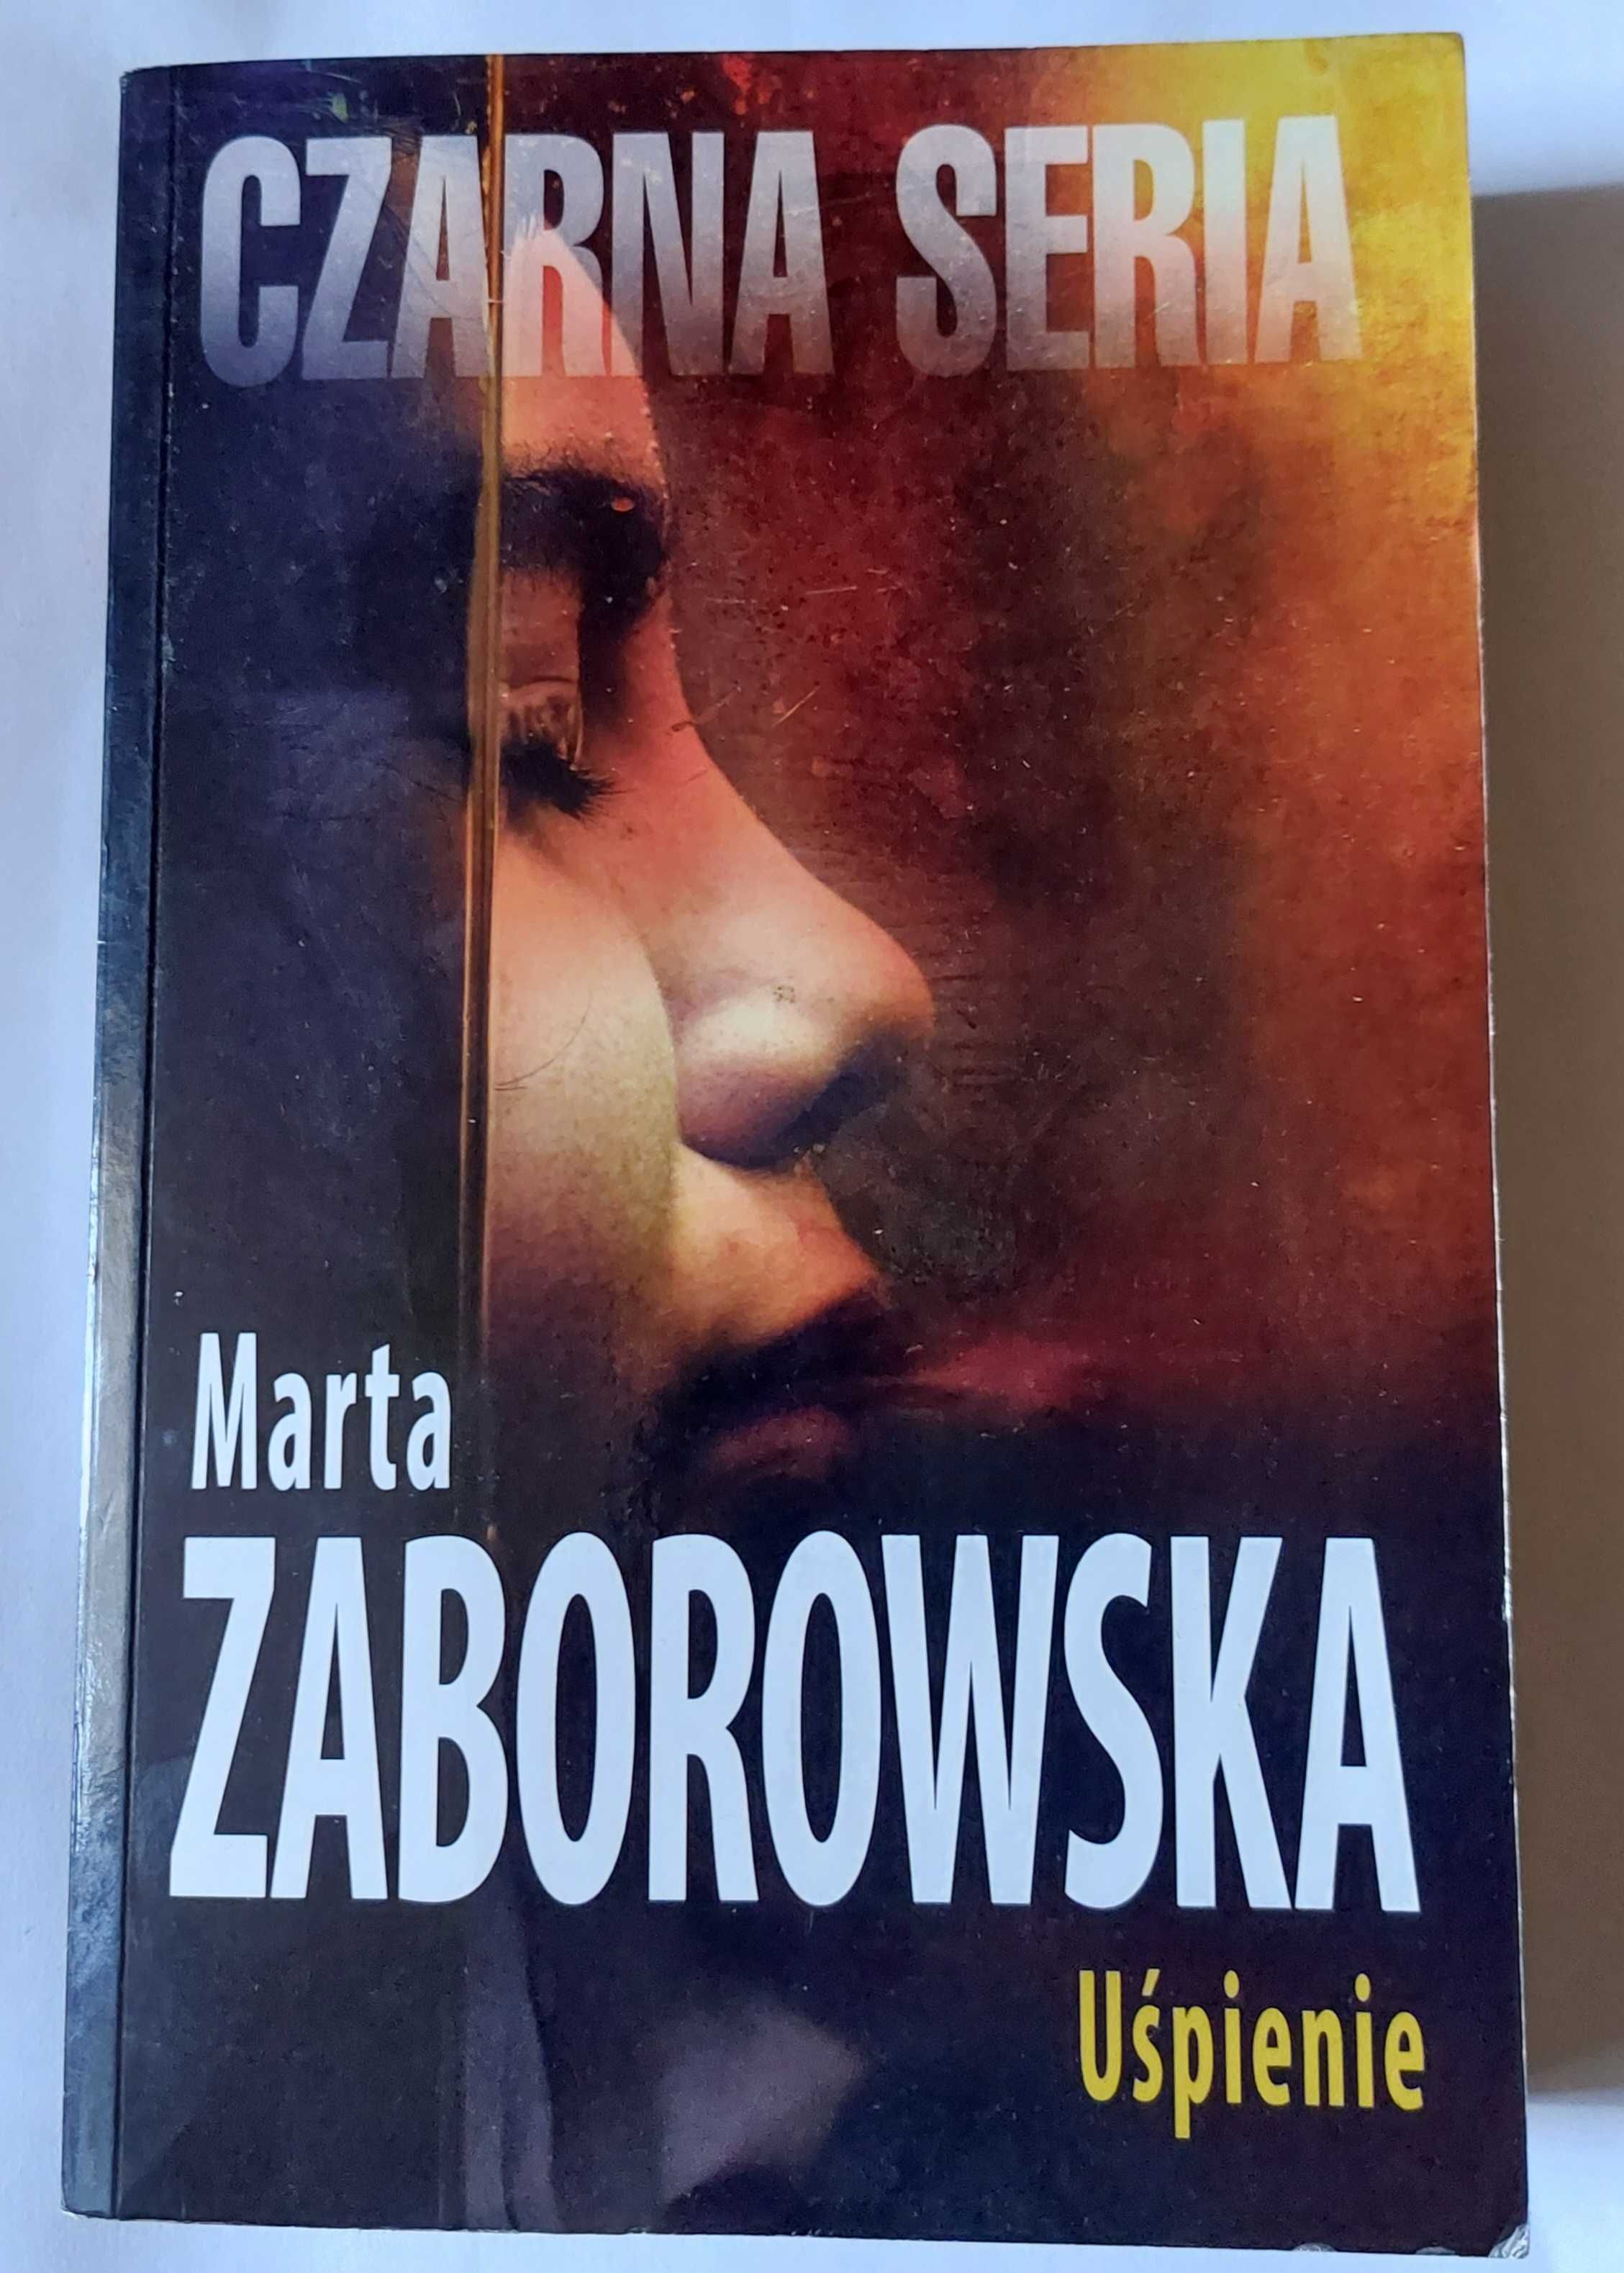 UŚPIENIE - Marta Zaborowska | książka | czarna seria